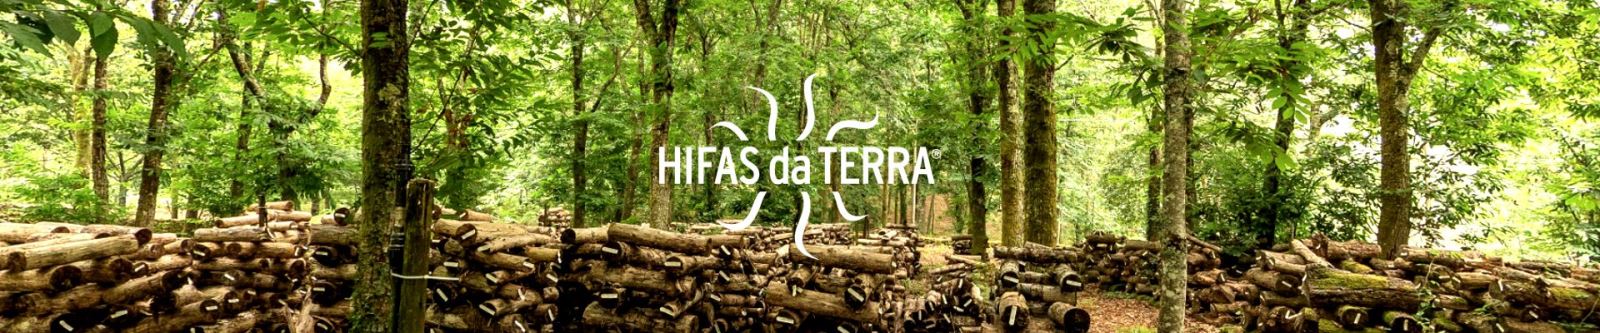 Suroviny pro výrobu doplňků Hifas da Terra nenakupuje od jiných producentů,  ale získává z hub pěstovaných na vlastní eko farmě.